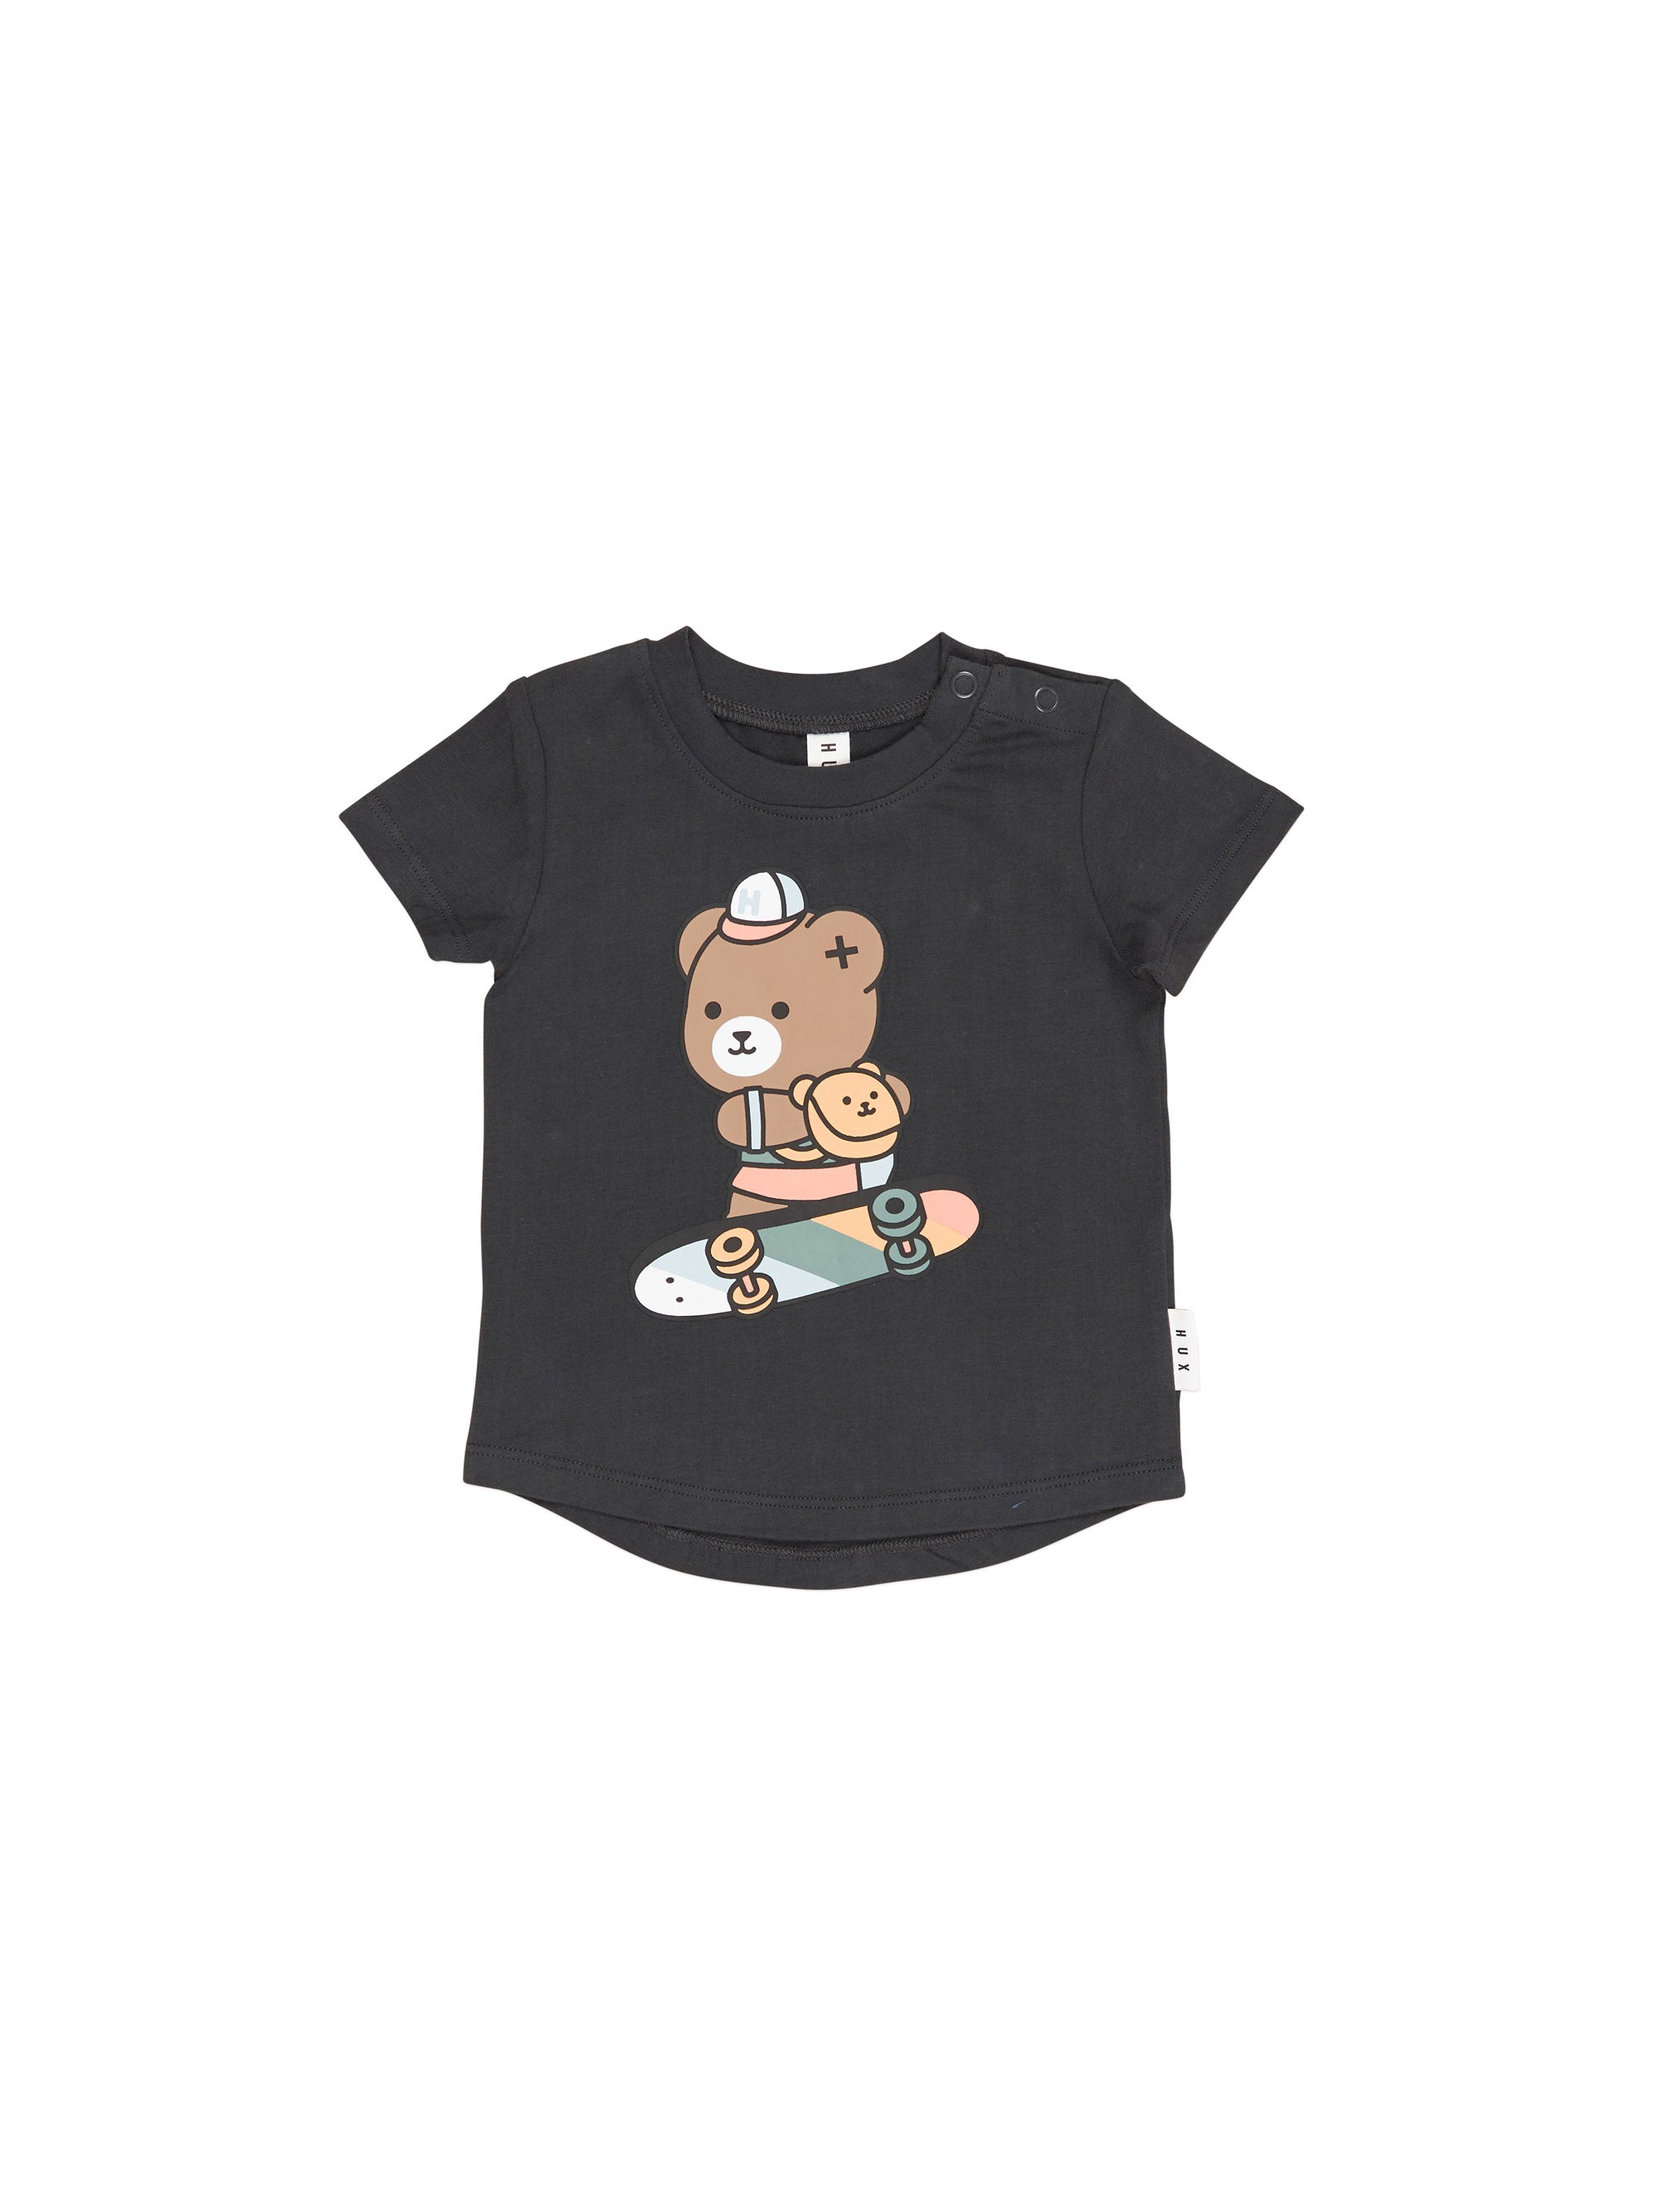 Soft Black Skater Bear T-Shirt